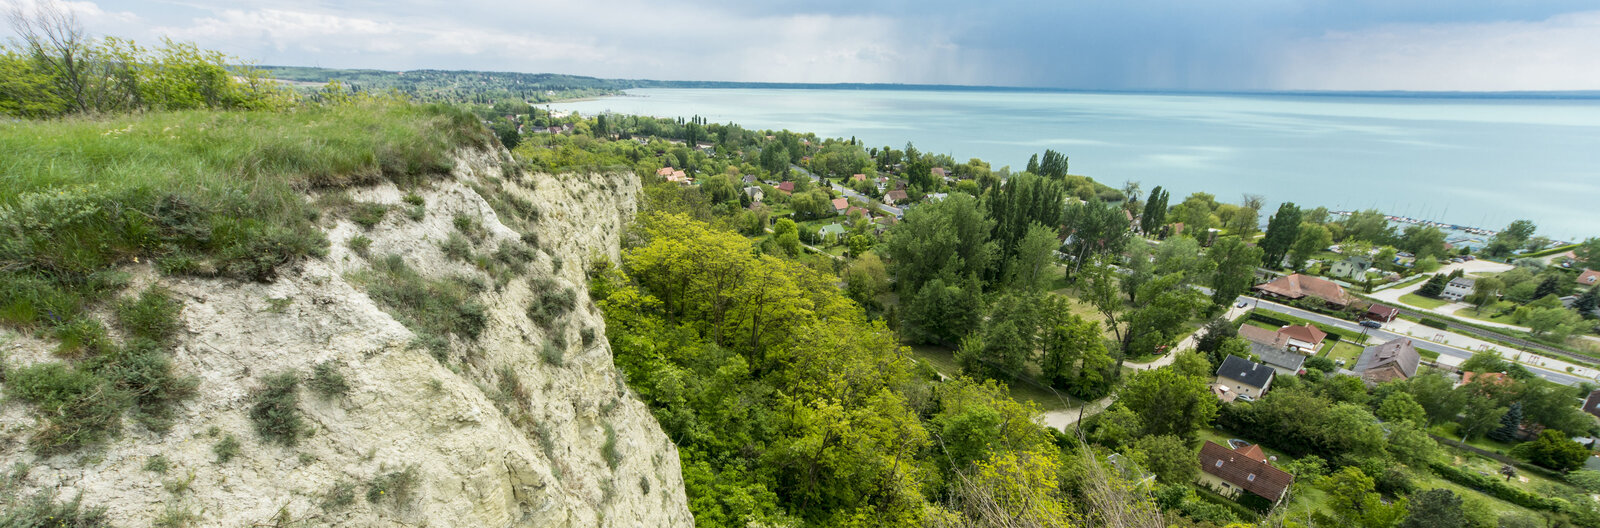 7 panorámás túraútvonal, ahonnan gyönyörű az őszi Balaton